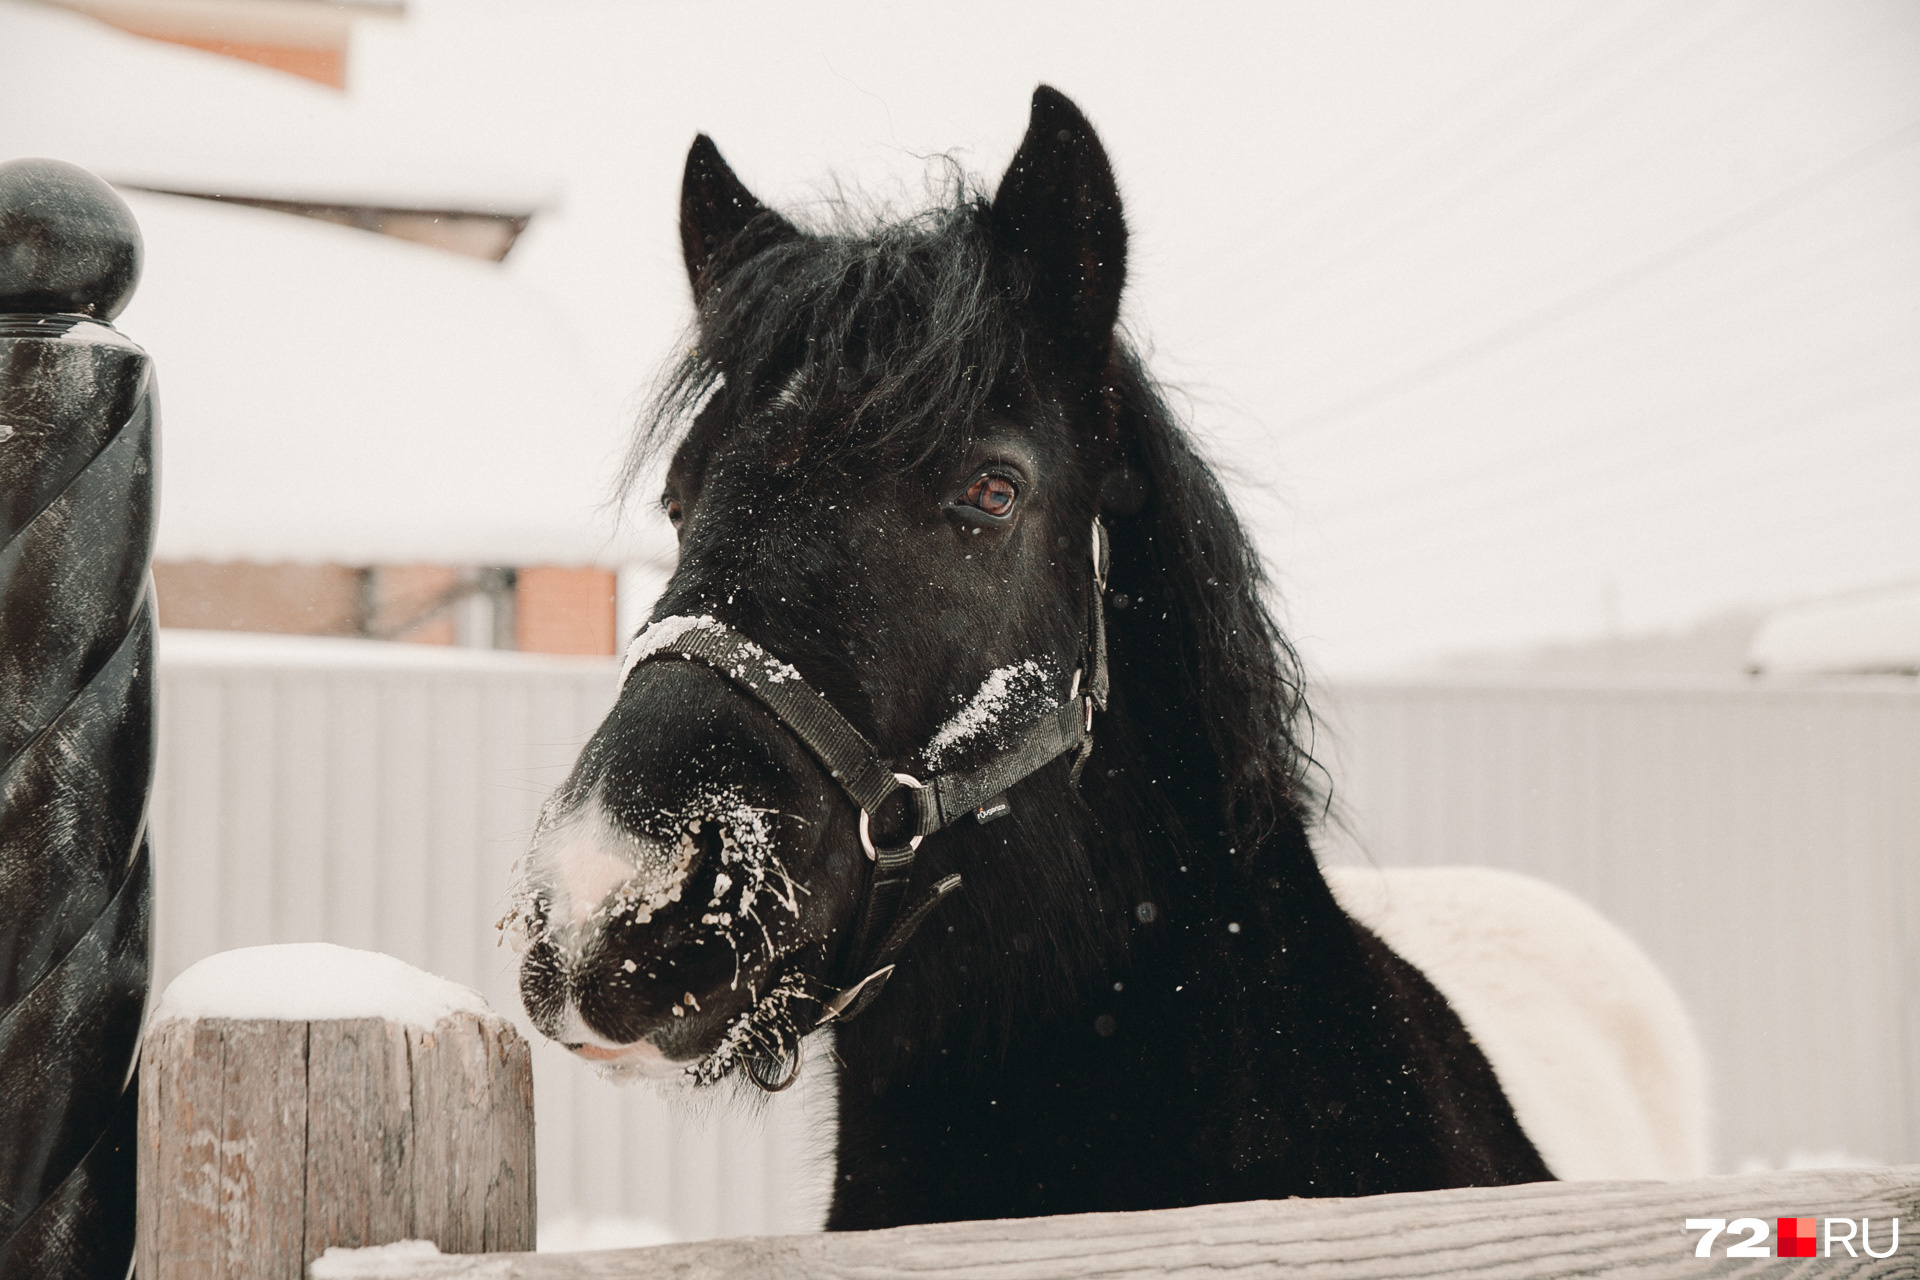 На фоне белого снега чёрная мордочка лошади смотрится весьма эффектно 